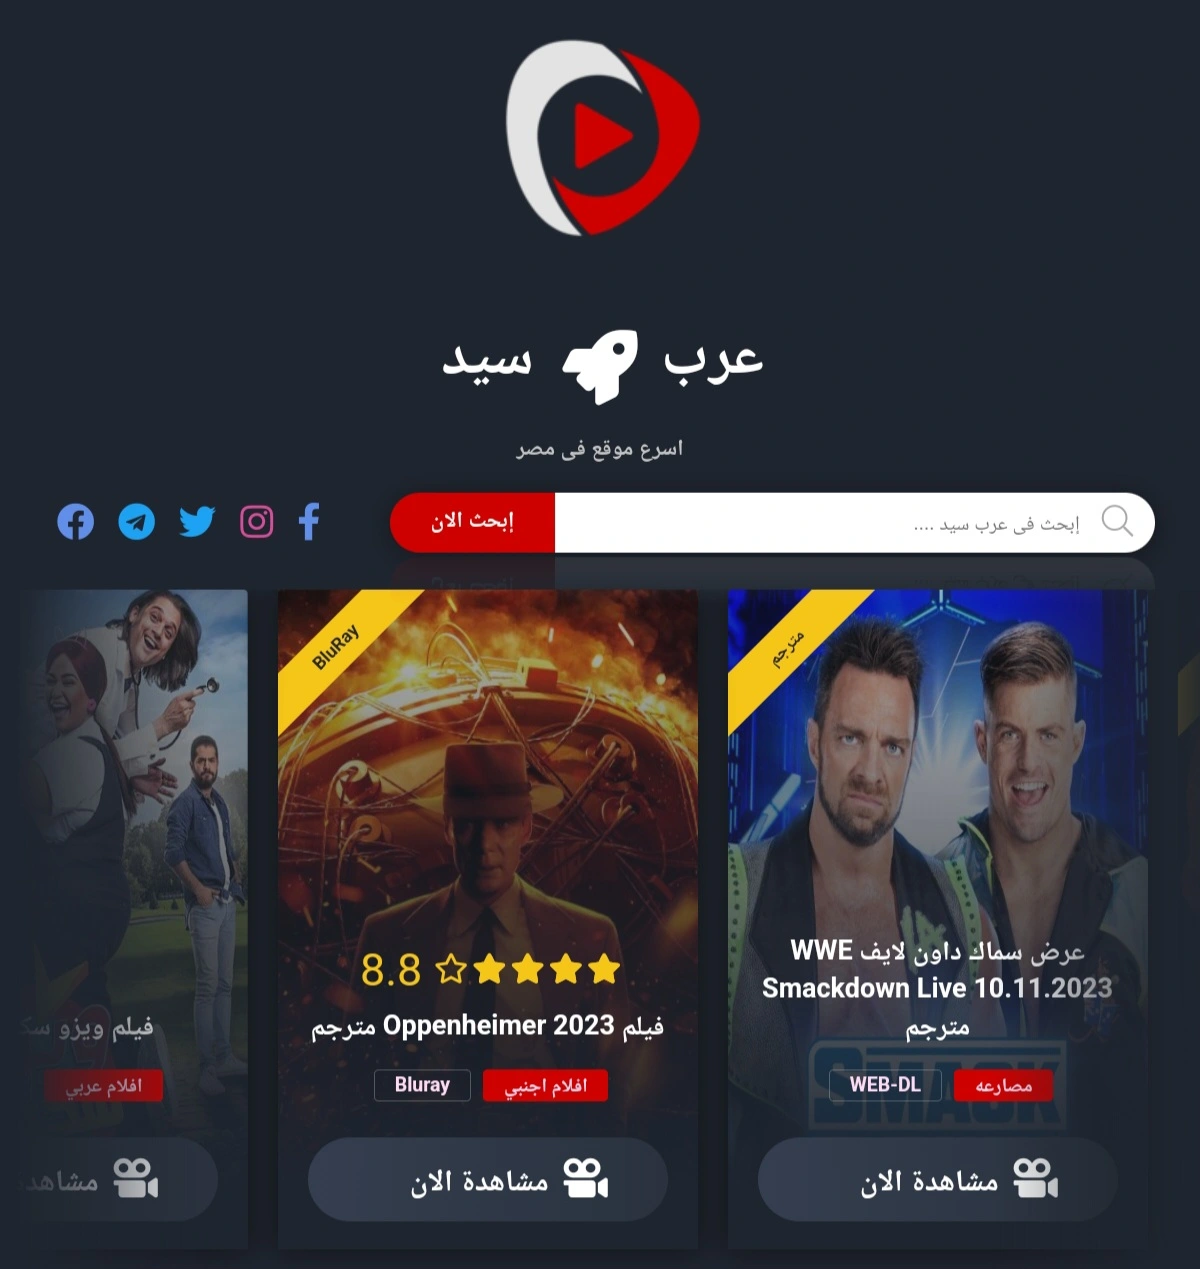 افلام  عرب سيد الموقع الأول لمشاهدة الافلام والمسلسلات Arabseed